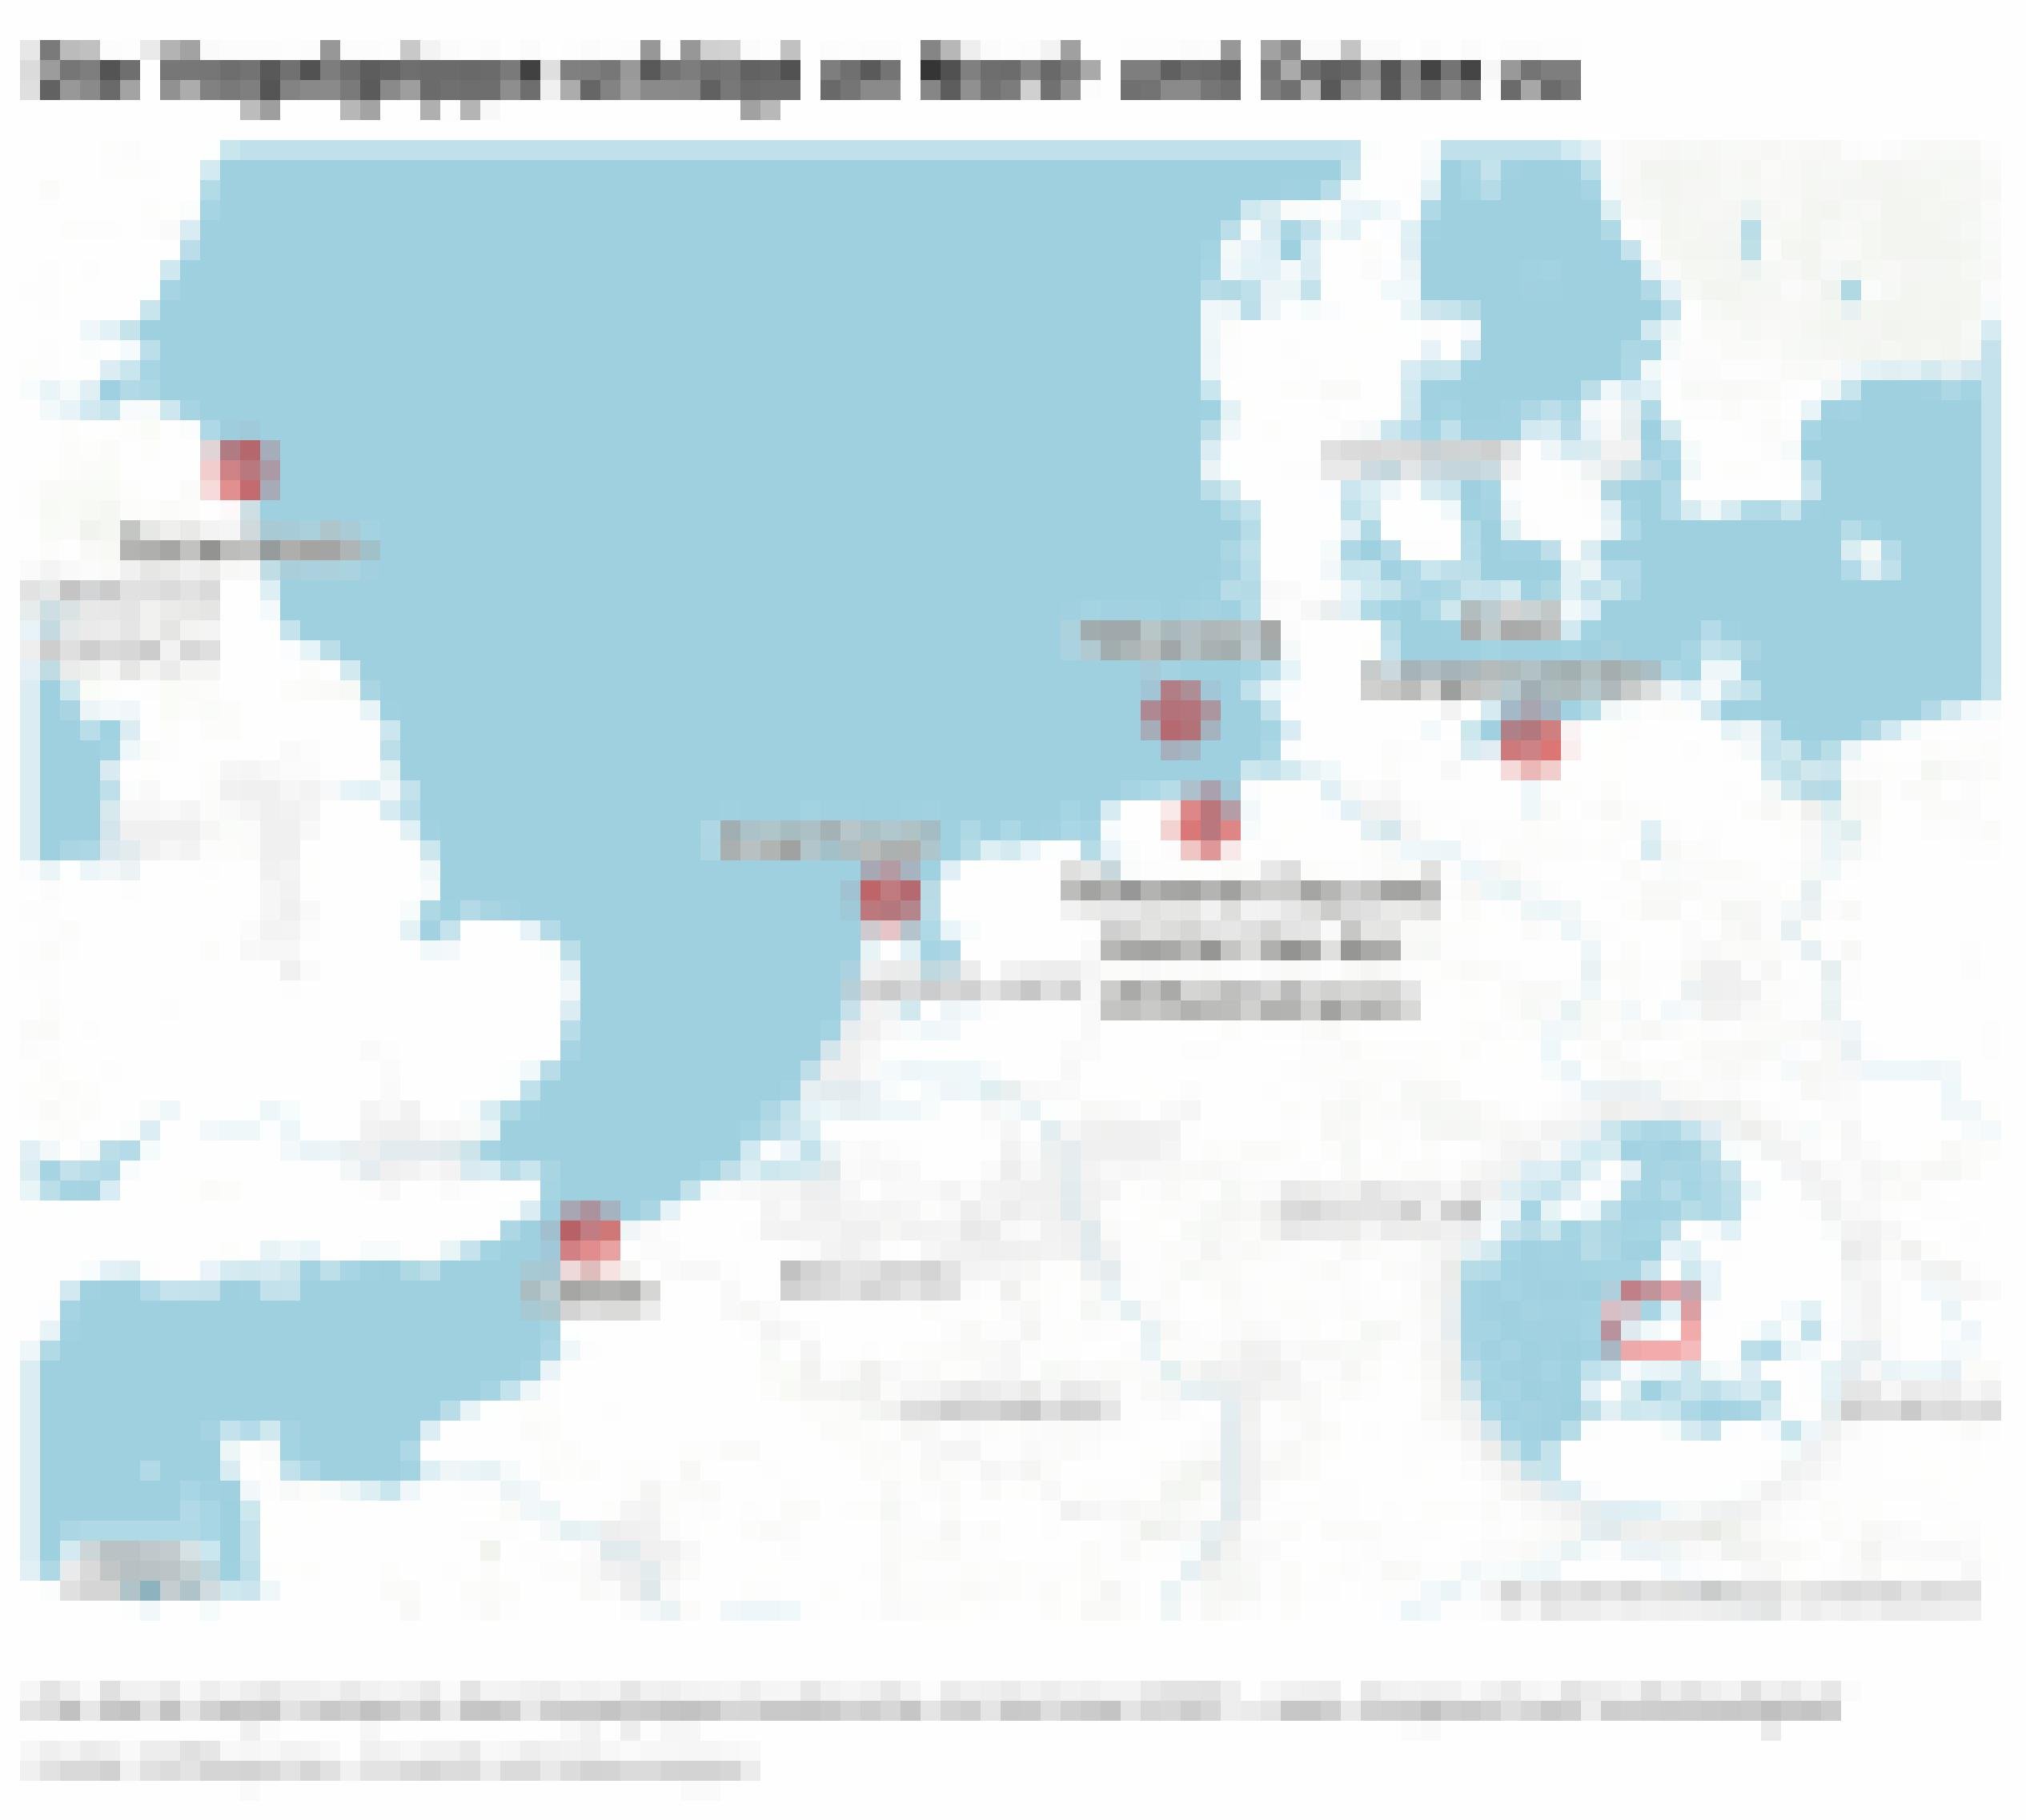 Landkarte mit Orten wie Texel, Helgoland und Calais, wo die Vogelgrippe auftritt